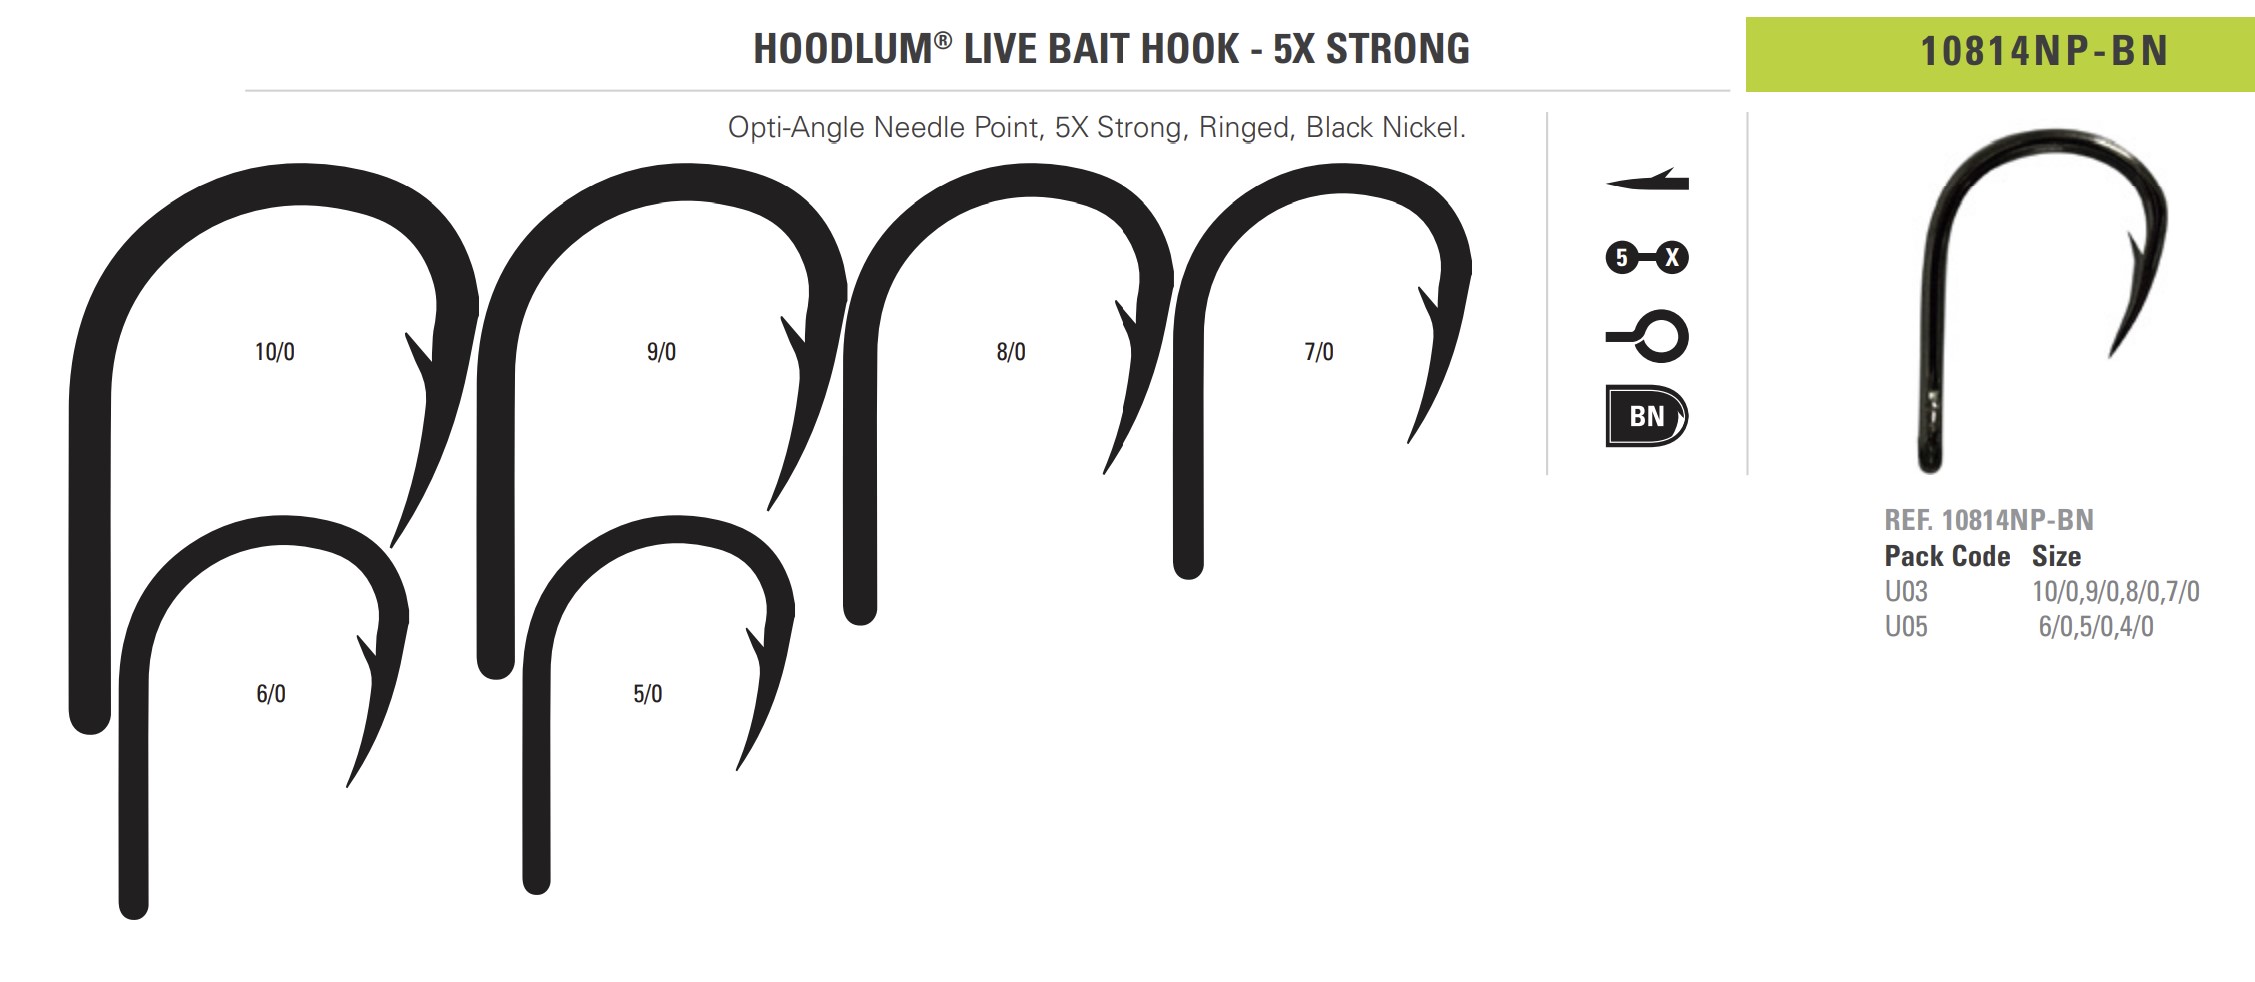 HOODLUM® LIVE BAIT HOOK - 5X STRONG MUSTAD